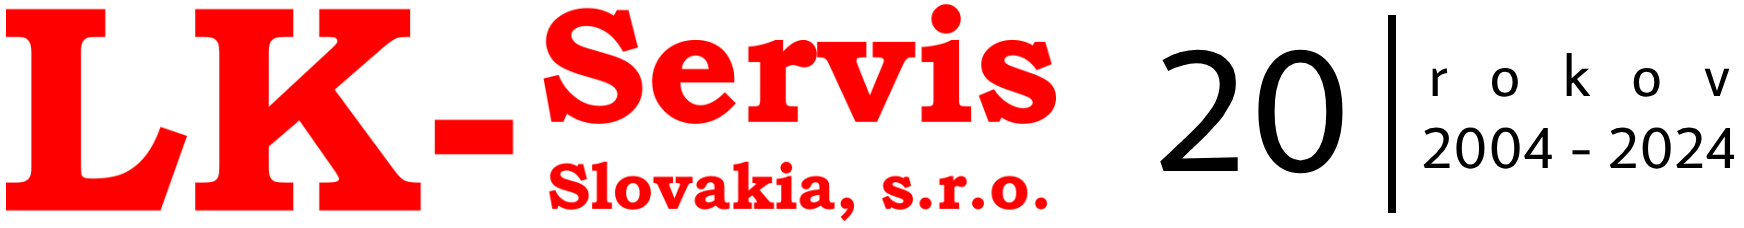 LK - Servis Slovakia s.r.o.